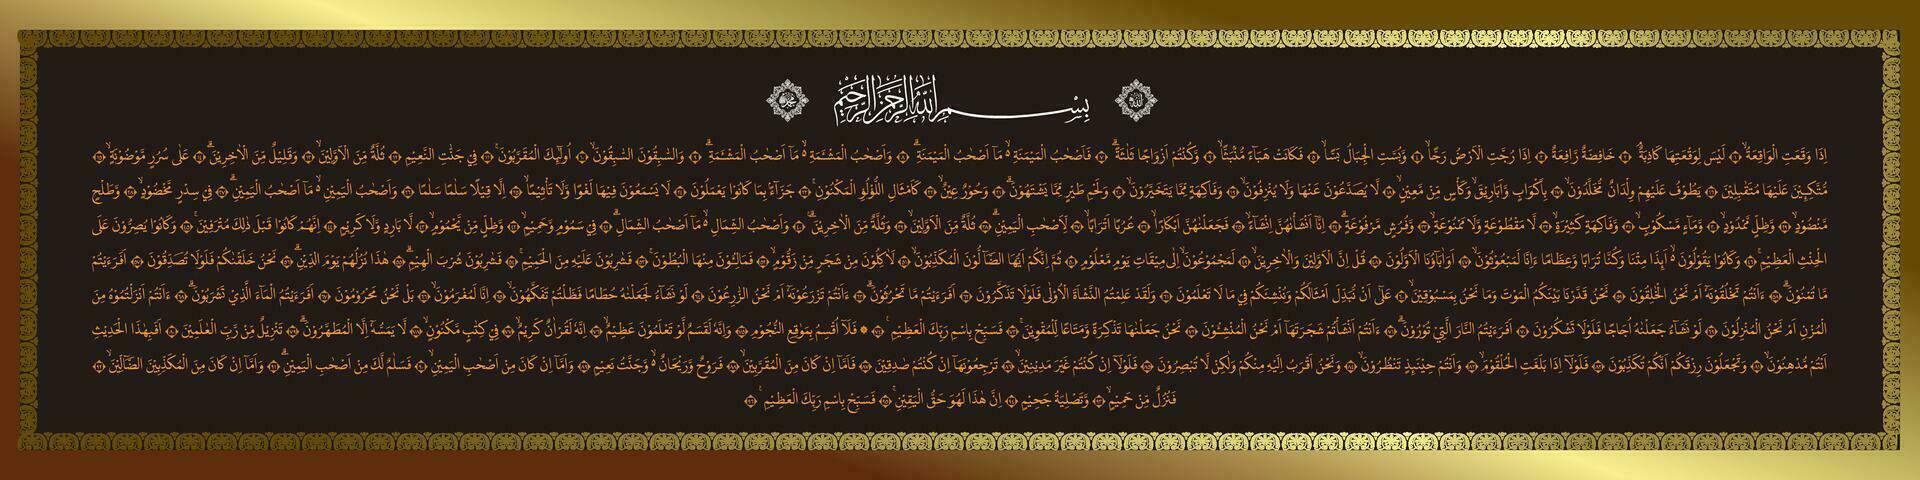 Arabisch Kalligraphie Hintergrund von Sure al waqiah 1-96 welche meint damit verherrlichen im das Name von Ihre Gott, das die meisten hoch. vektor